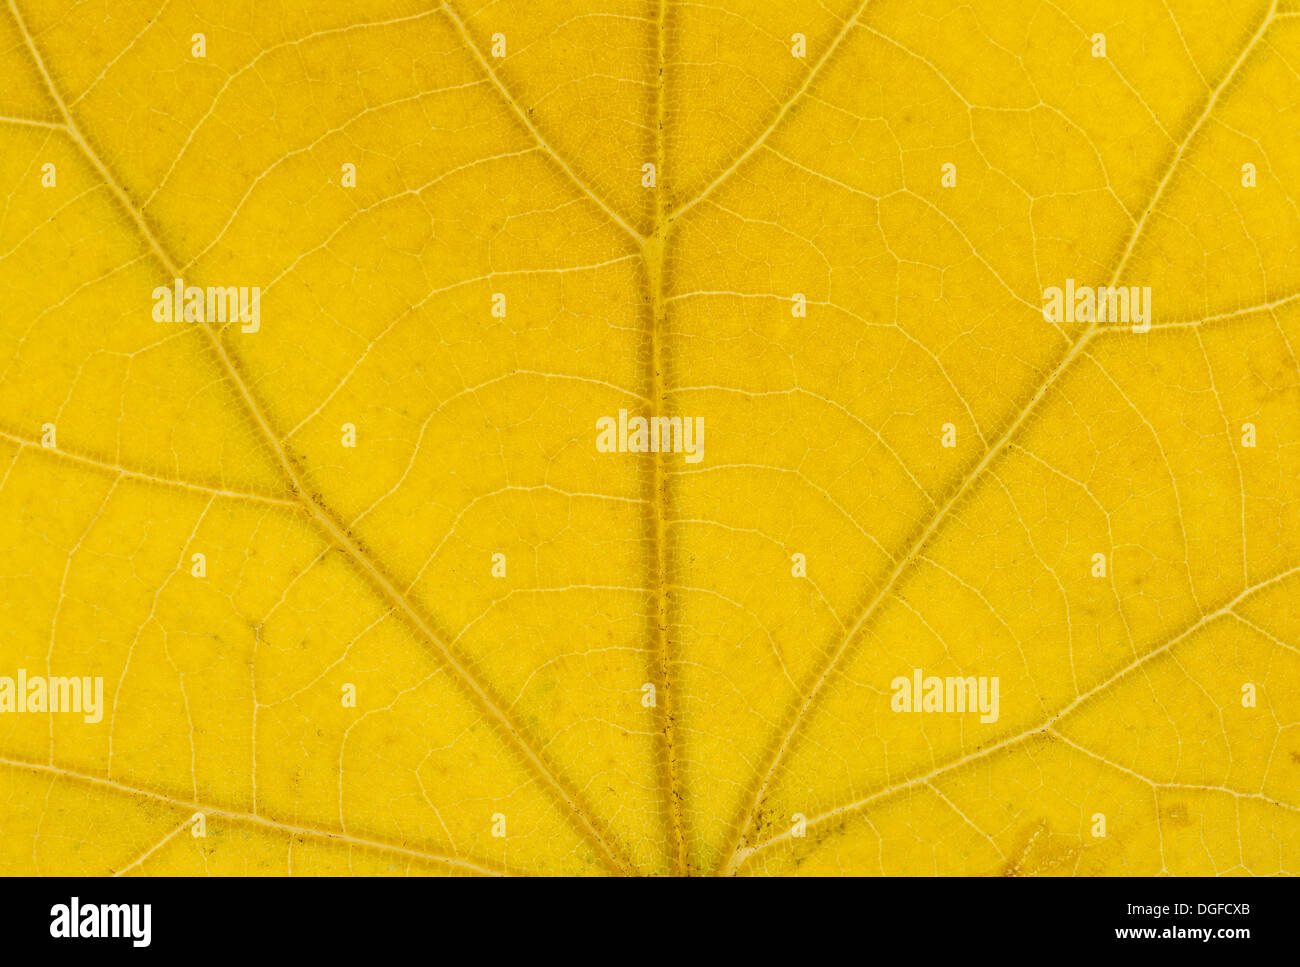 Gran dejados Tilia platyphyllos (cal) estructura foliar en luz transmitida, de colores otoñales, detalle, centro de la ciudad Foto de stock